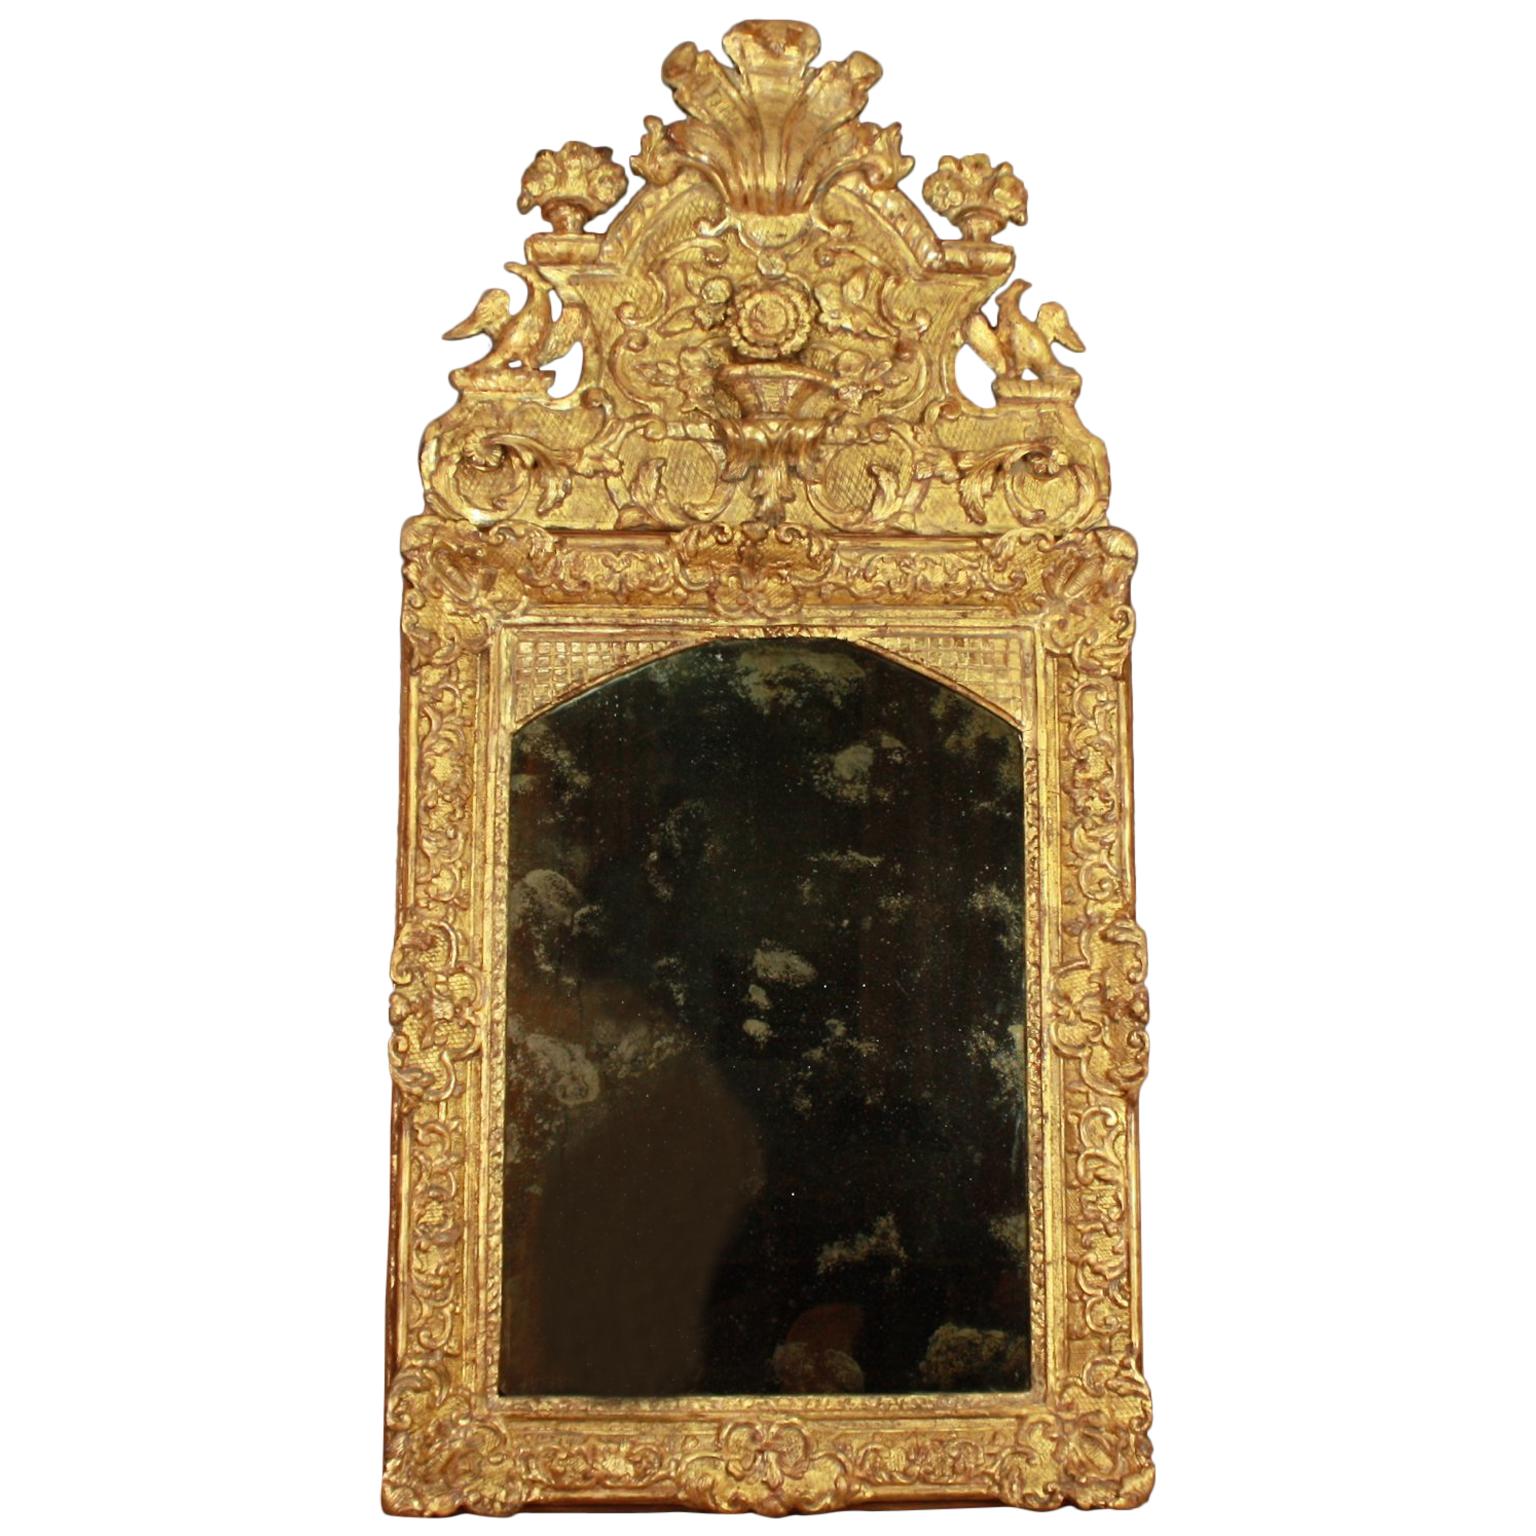 Vase de style Régence français du début du XVIIIe siècle avec oiseaux et miroir en bois doré surplombant